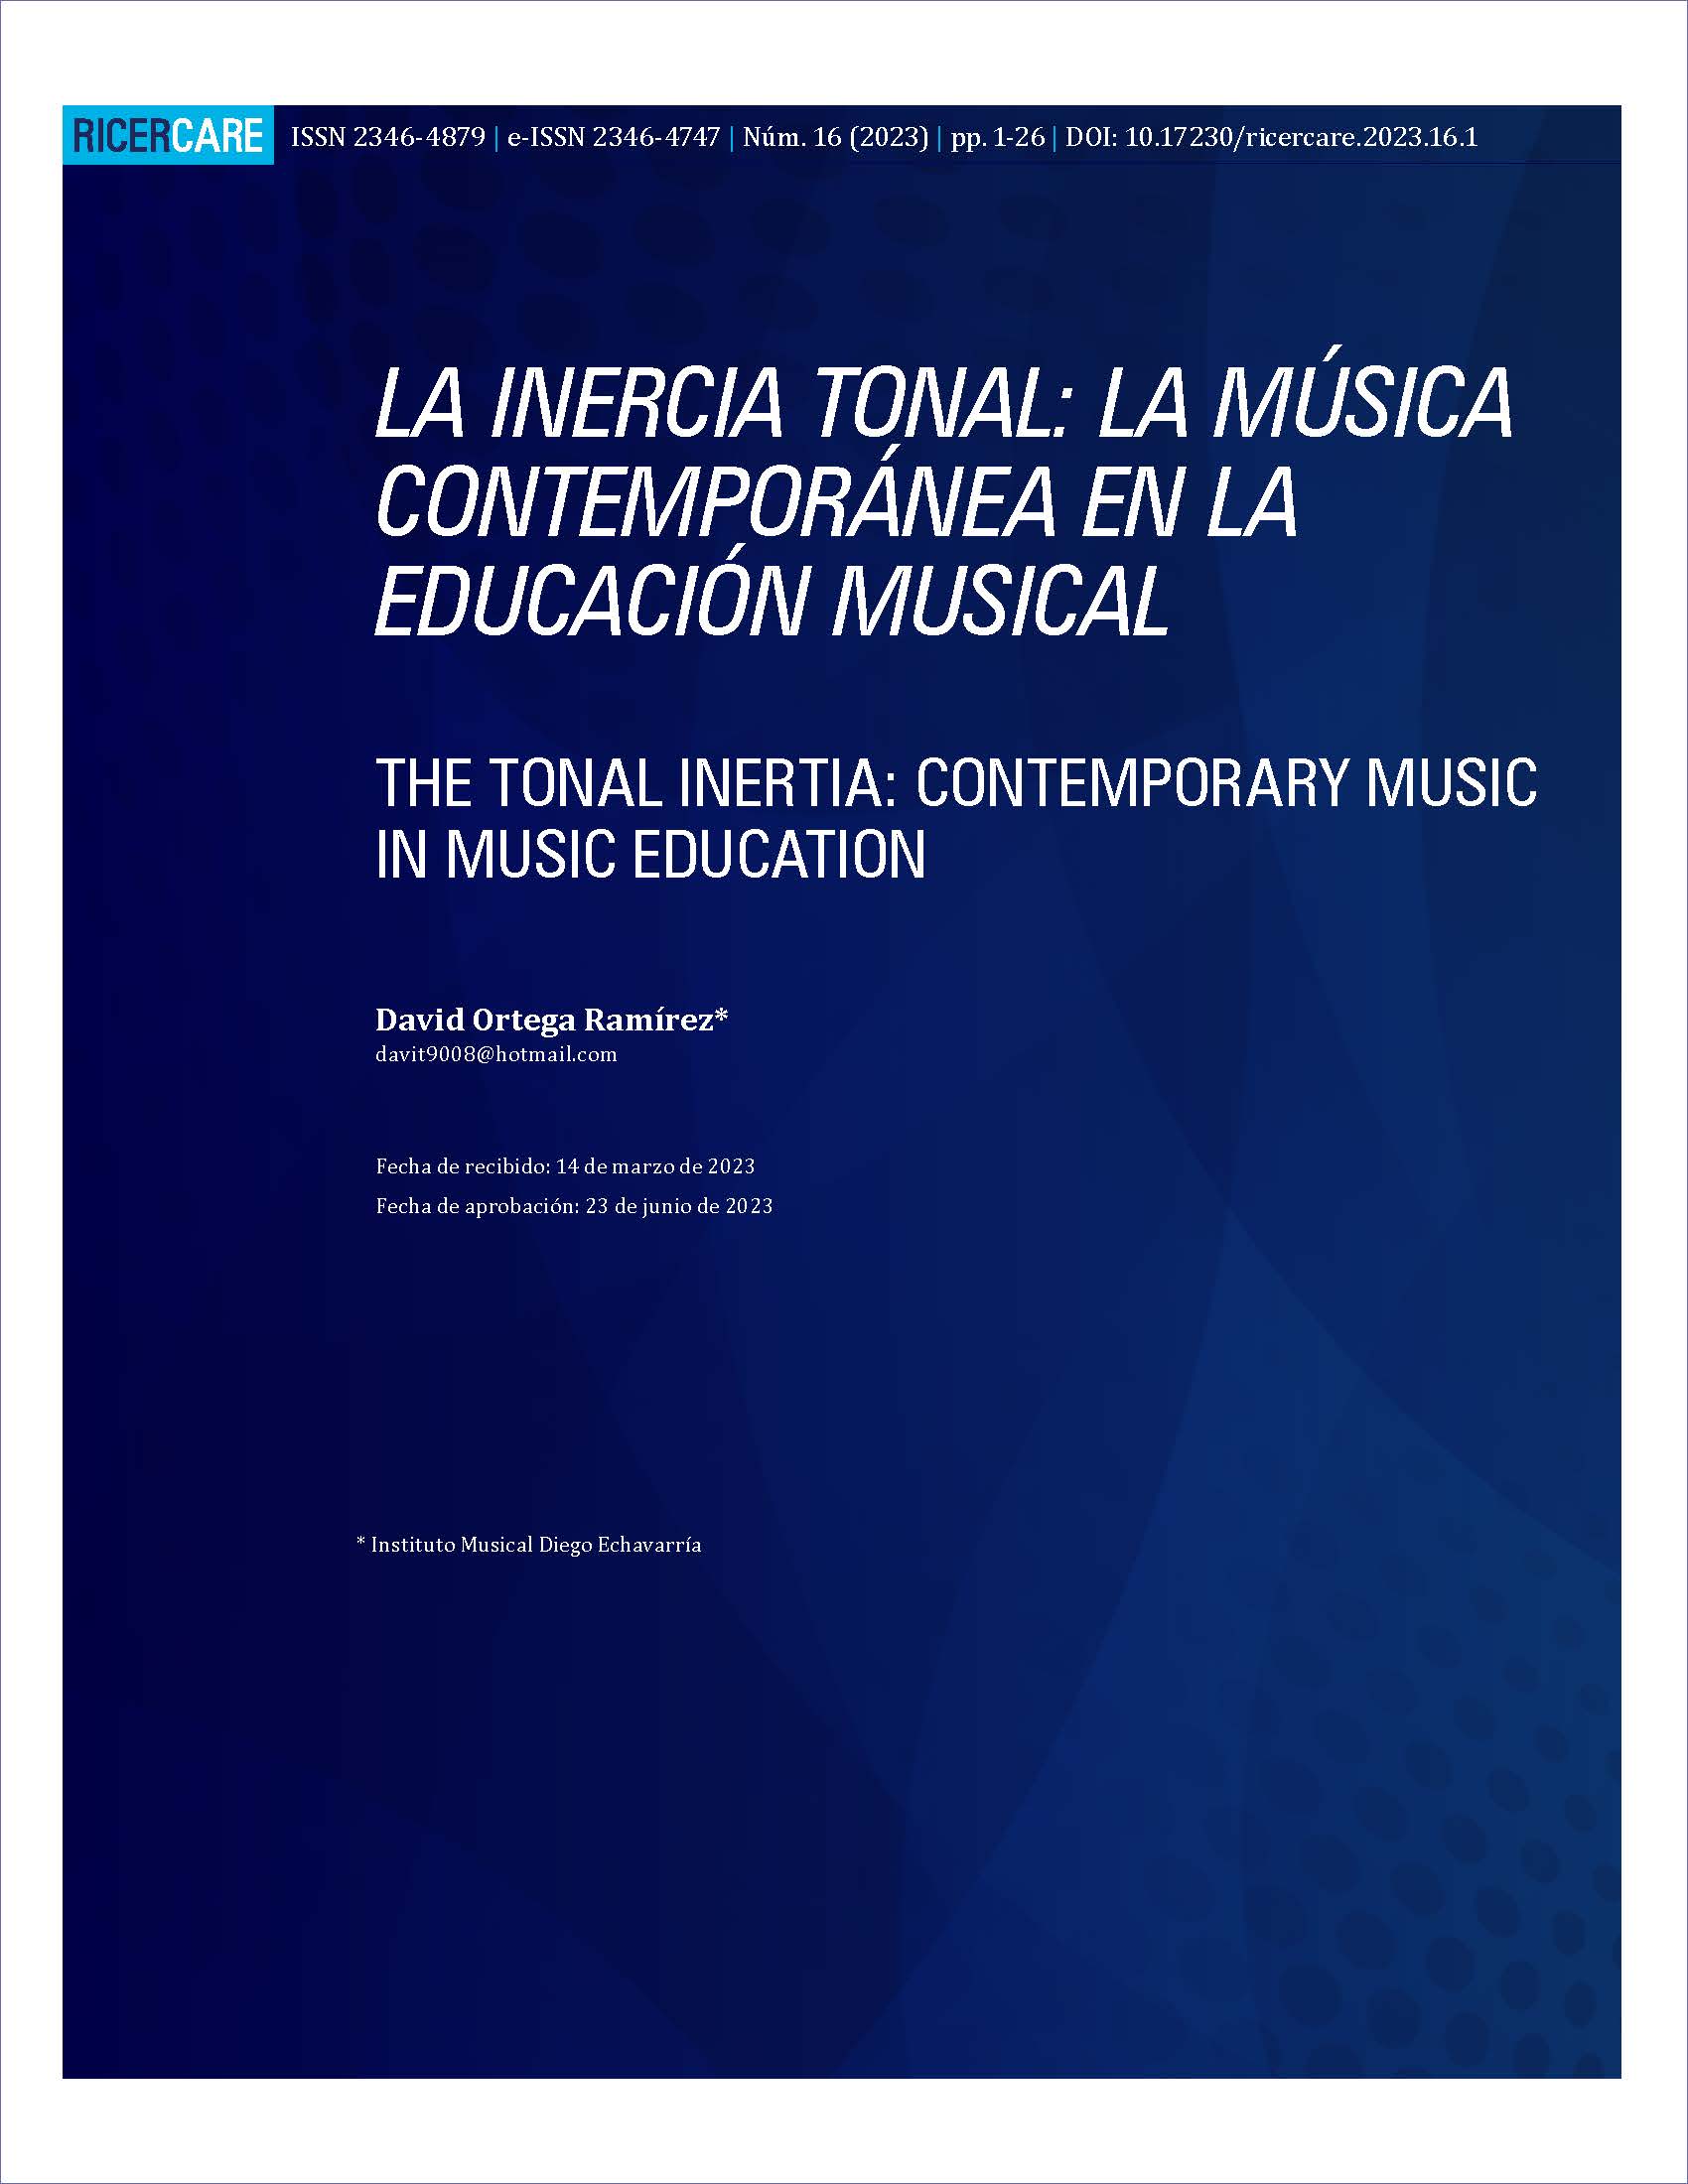 La inercia tonal: la música contemporánea en la education musical